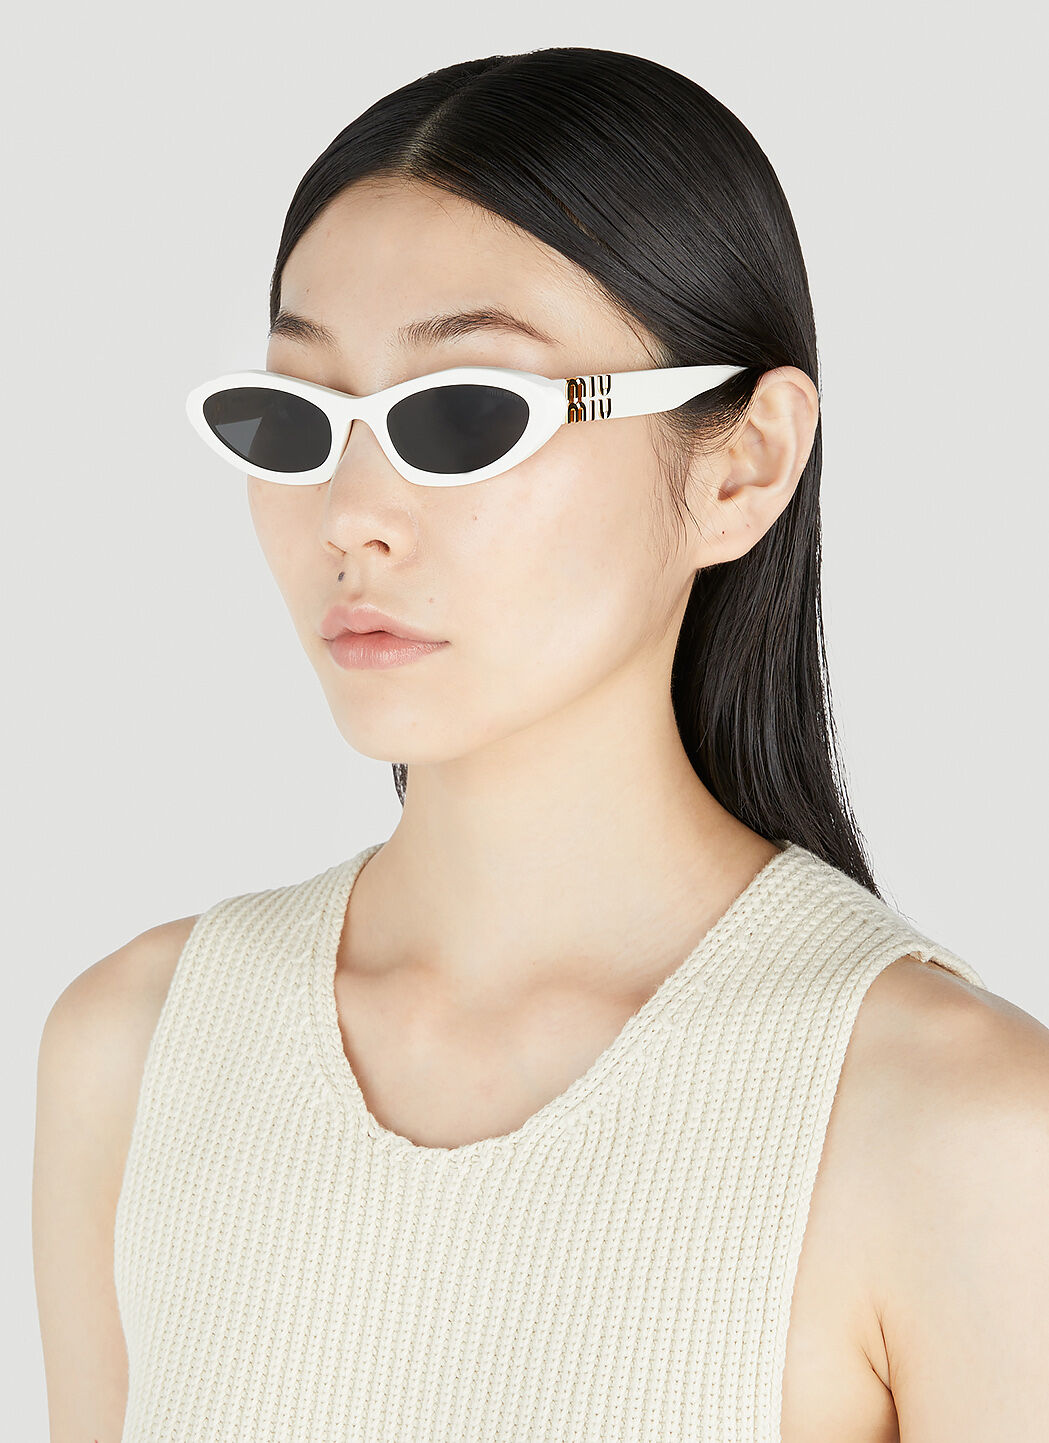 Miu Miu Eyewear: White Sunglasses now at £213.00+ | Stylight